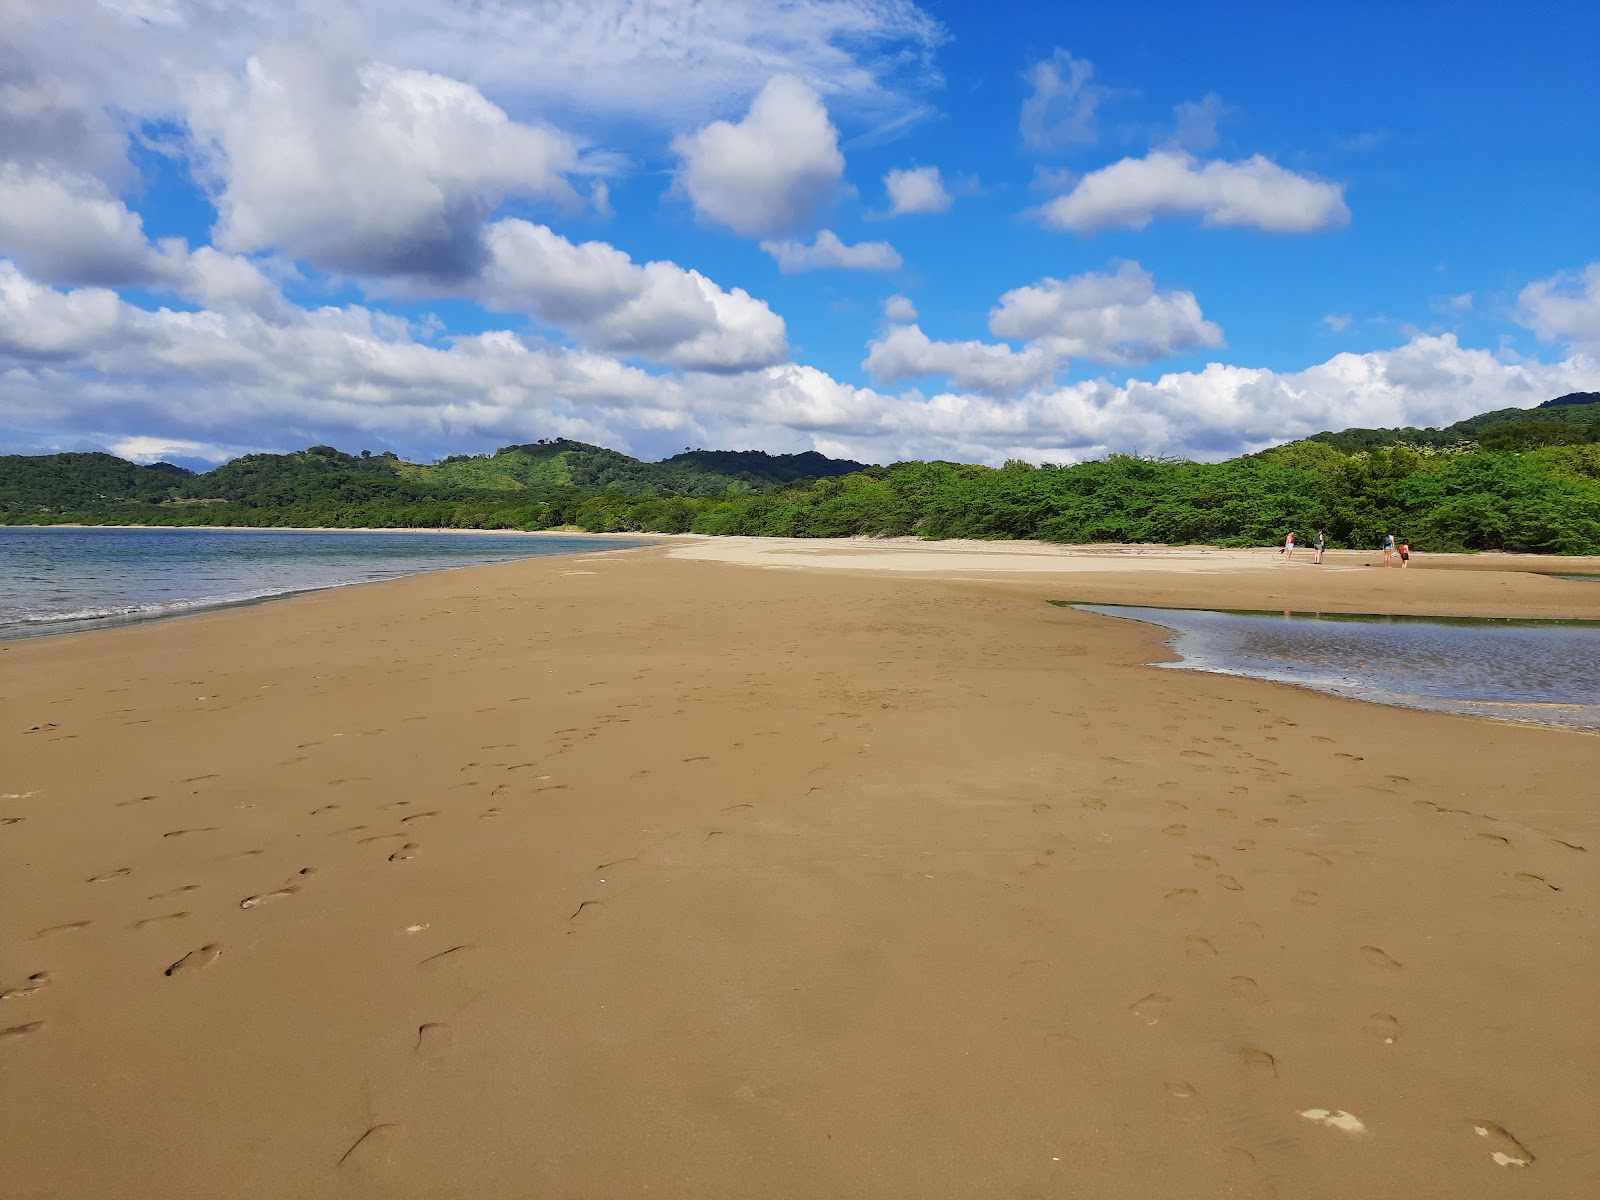 Zdjęcie Junquillal beach z poziomem czystości wysoki